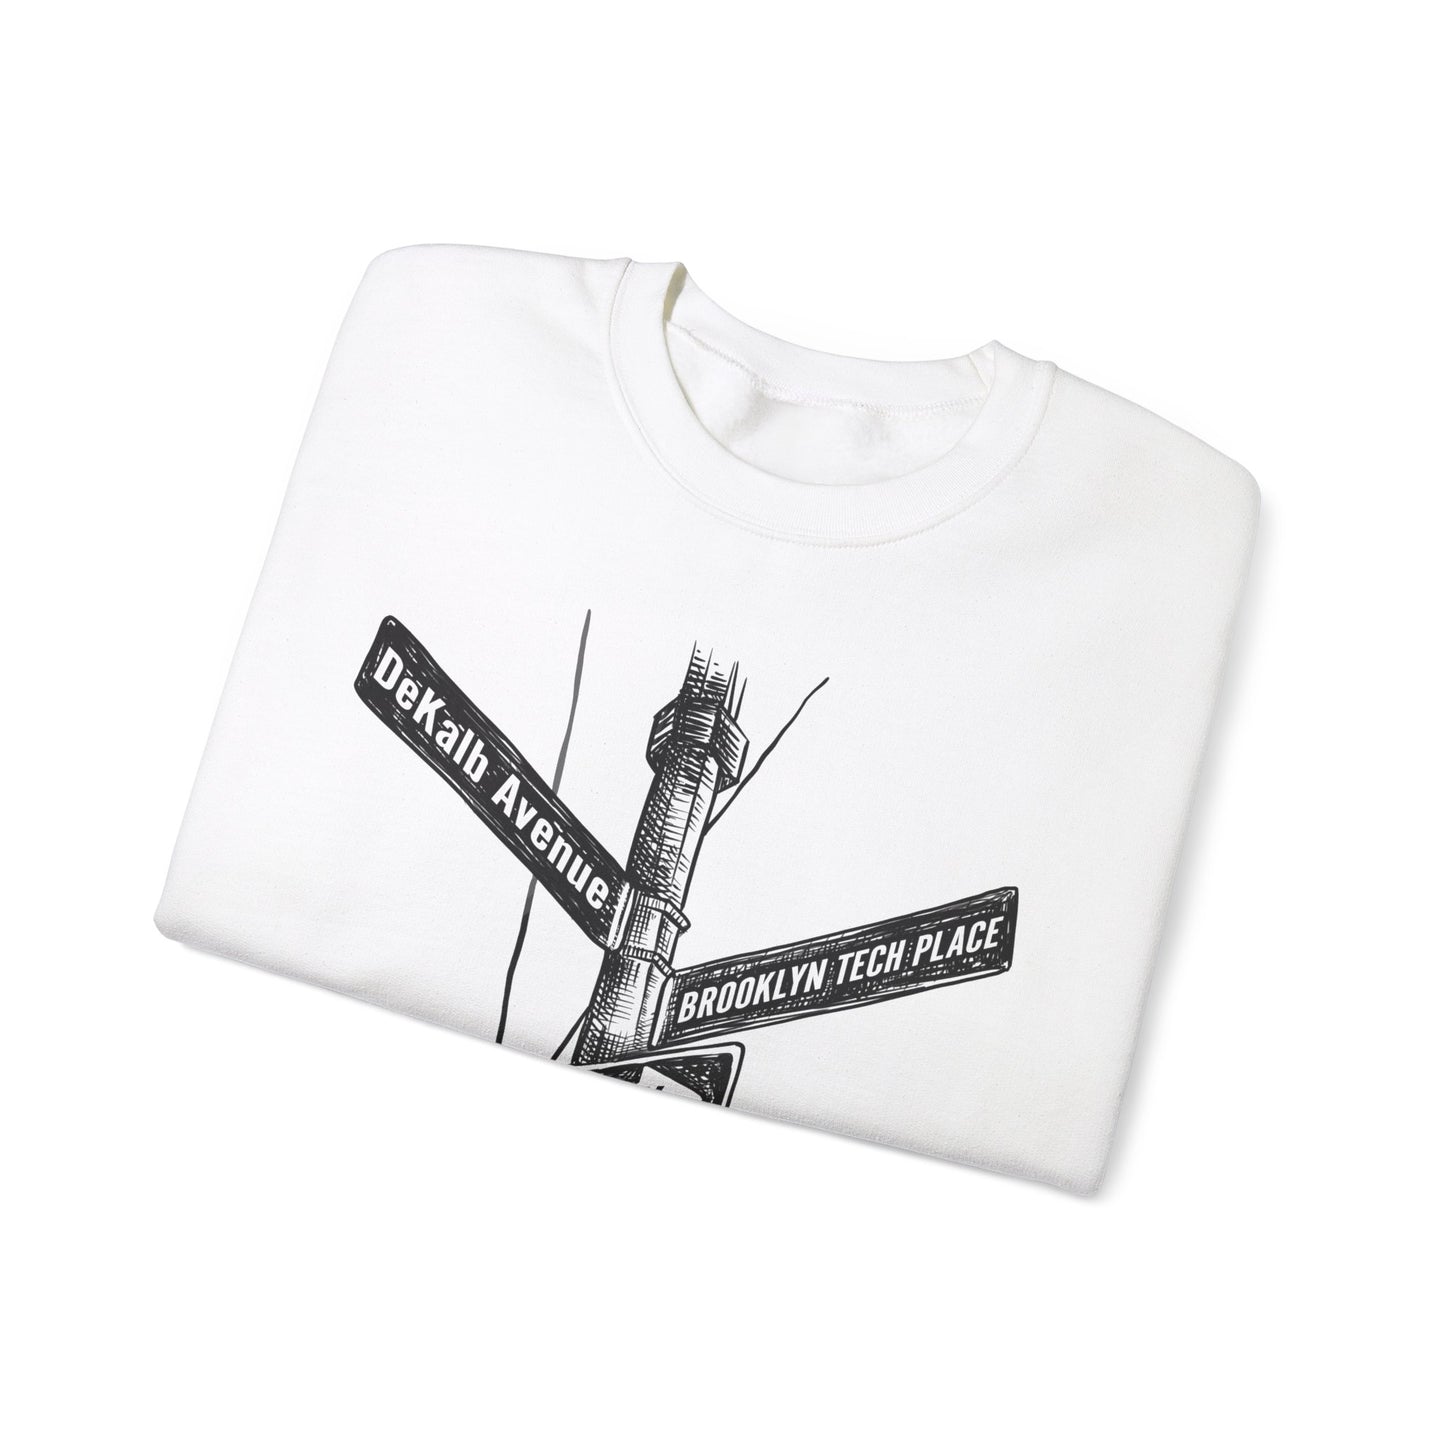 Boutique - Dekalb Ave & Brooklyn Tech Pl - Men's Heavy Blend Crewneck Sweatshirt - Black Graphic